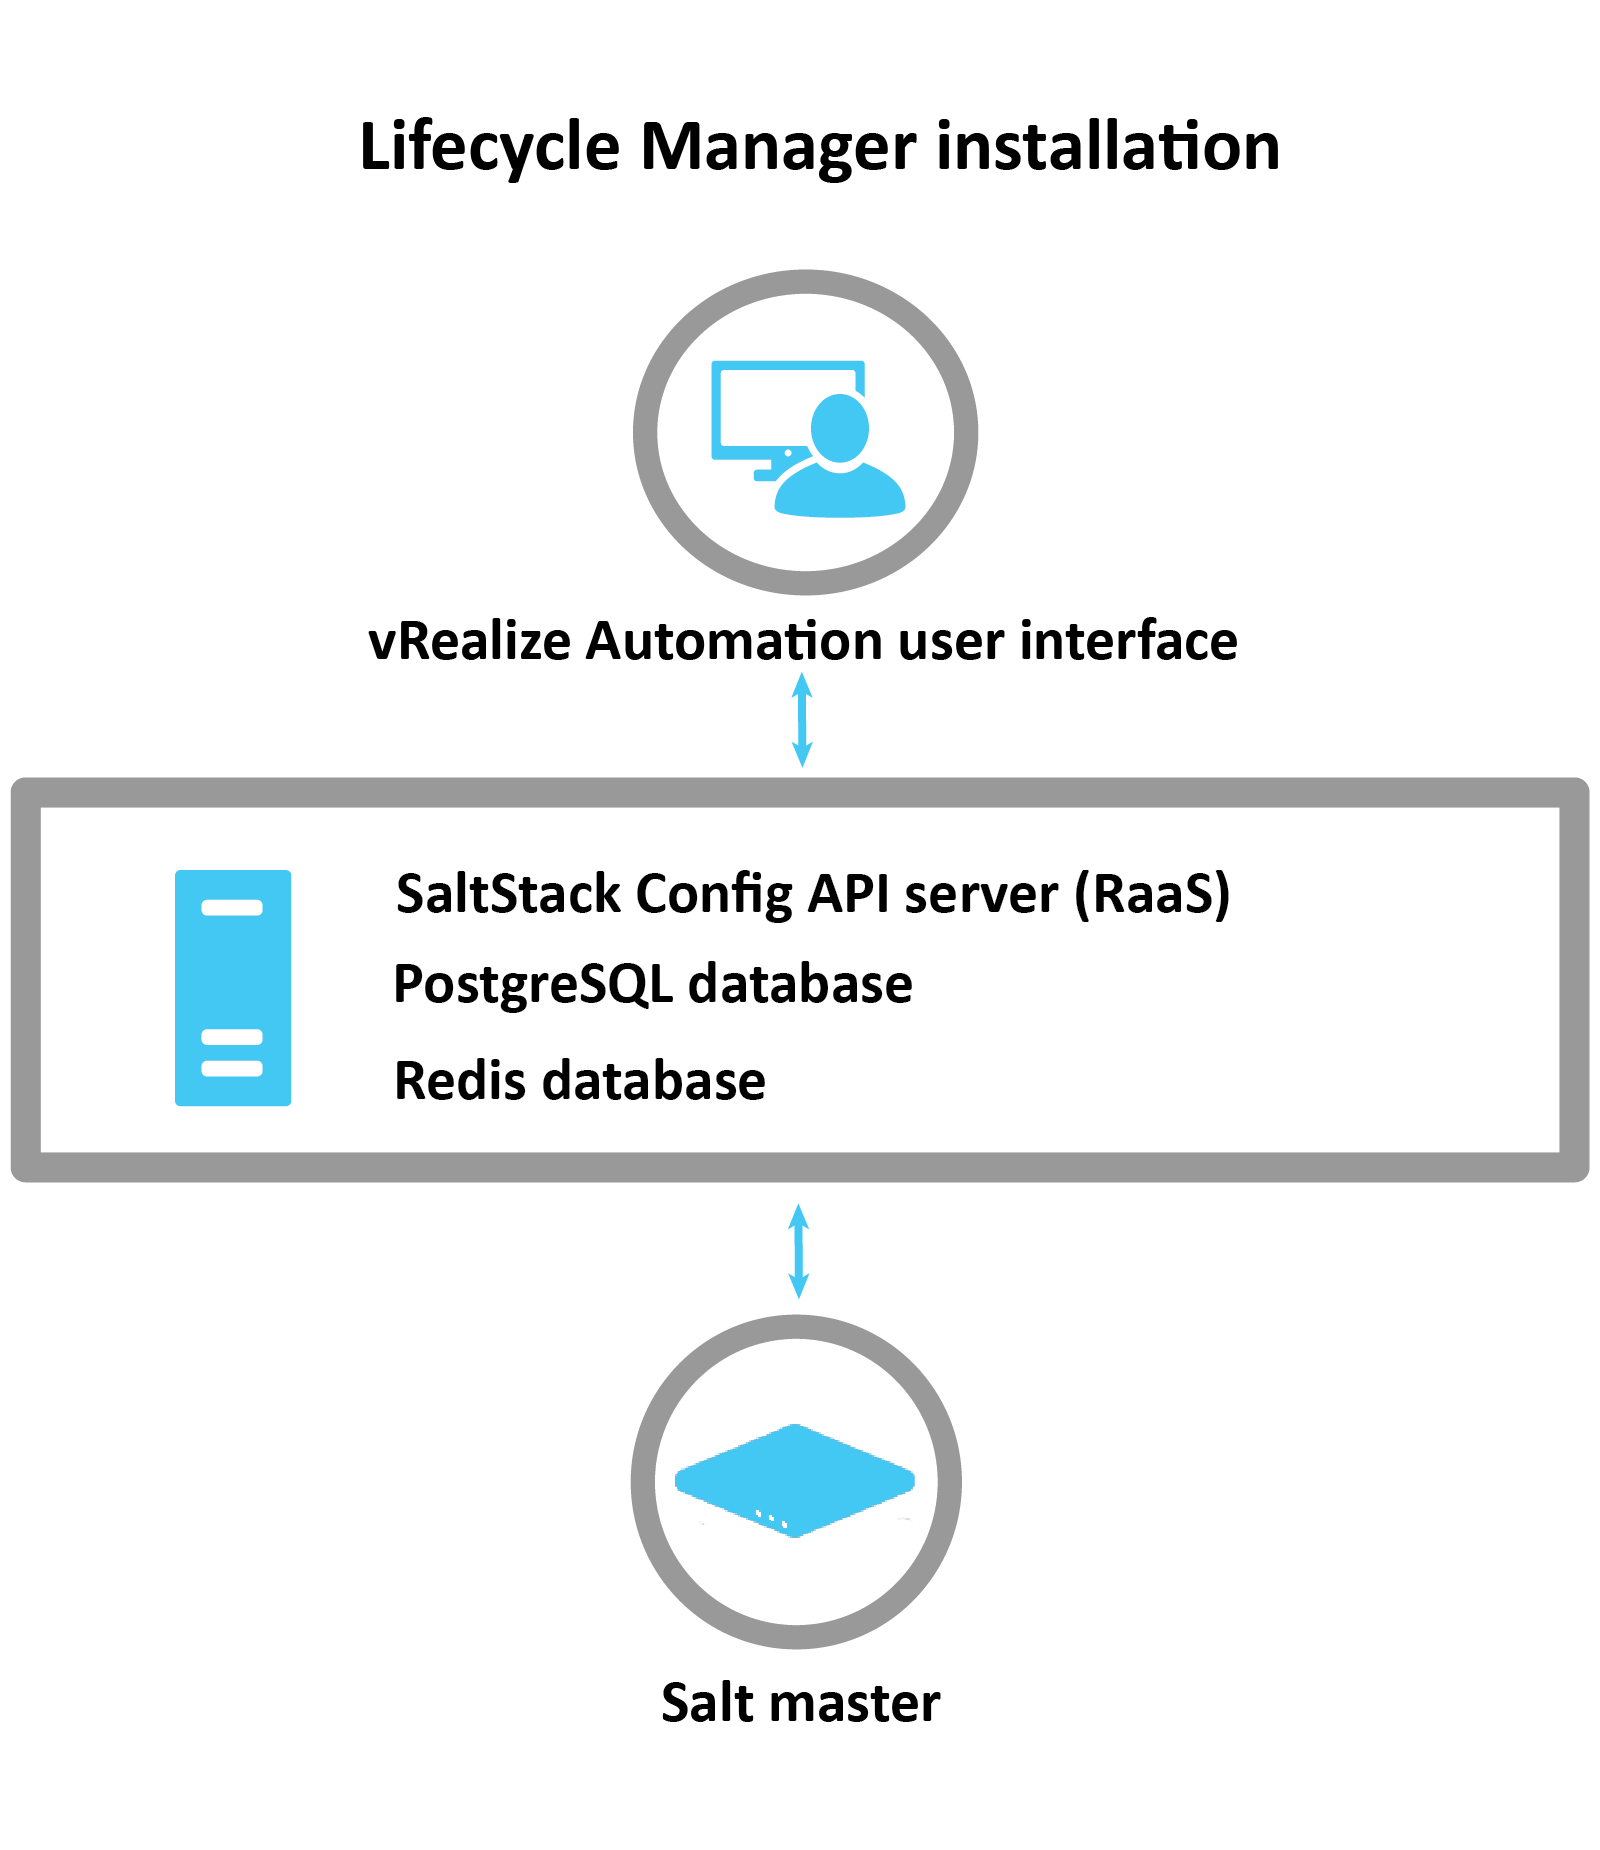 Diagram, in dem erläutert wird, wie SaltStack Config über LCM installiert wird: LCM verwendet die vRA-Schnittstelle, um den RaaS-Server, die Postgres-Datenbank und die Redis-Datenbank zu installieren. Nach der Installation wird der Salt-Master konfiguriert.